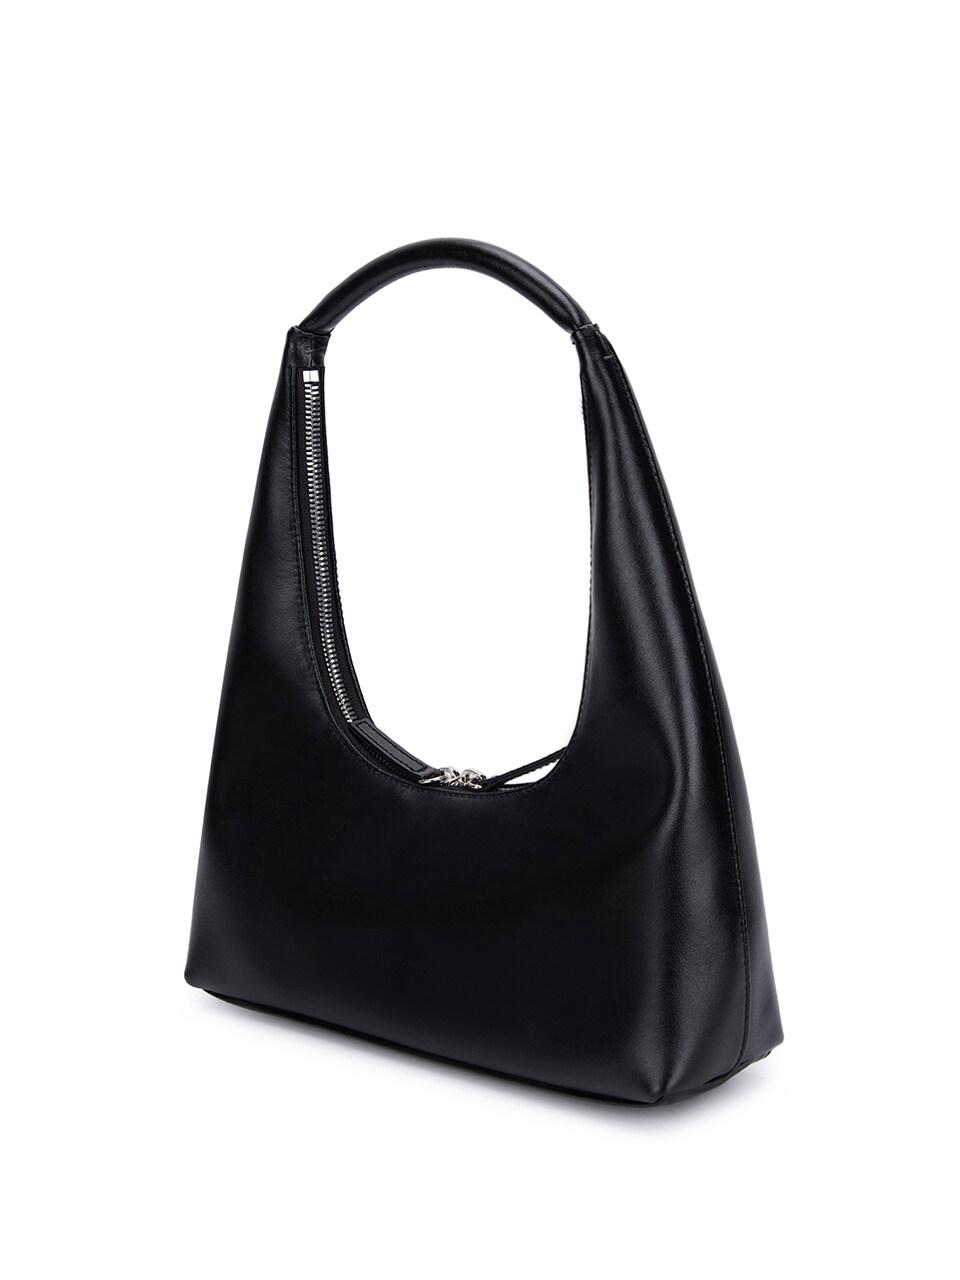 Marge Sherwood Leather Hobo Shoulder Bag in Black | Lyst